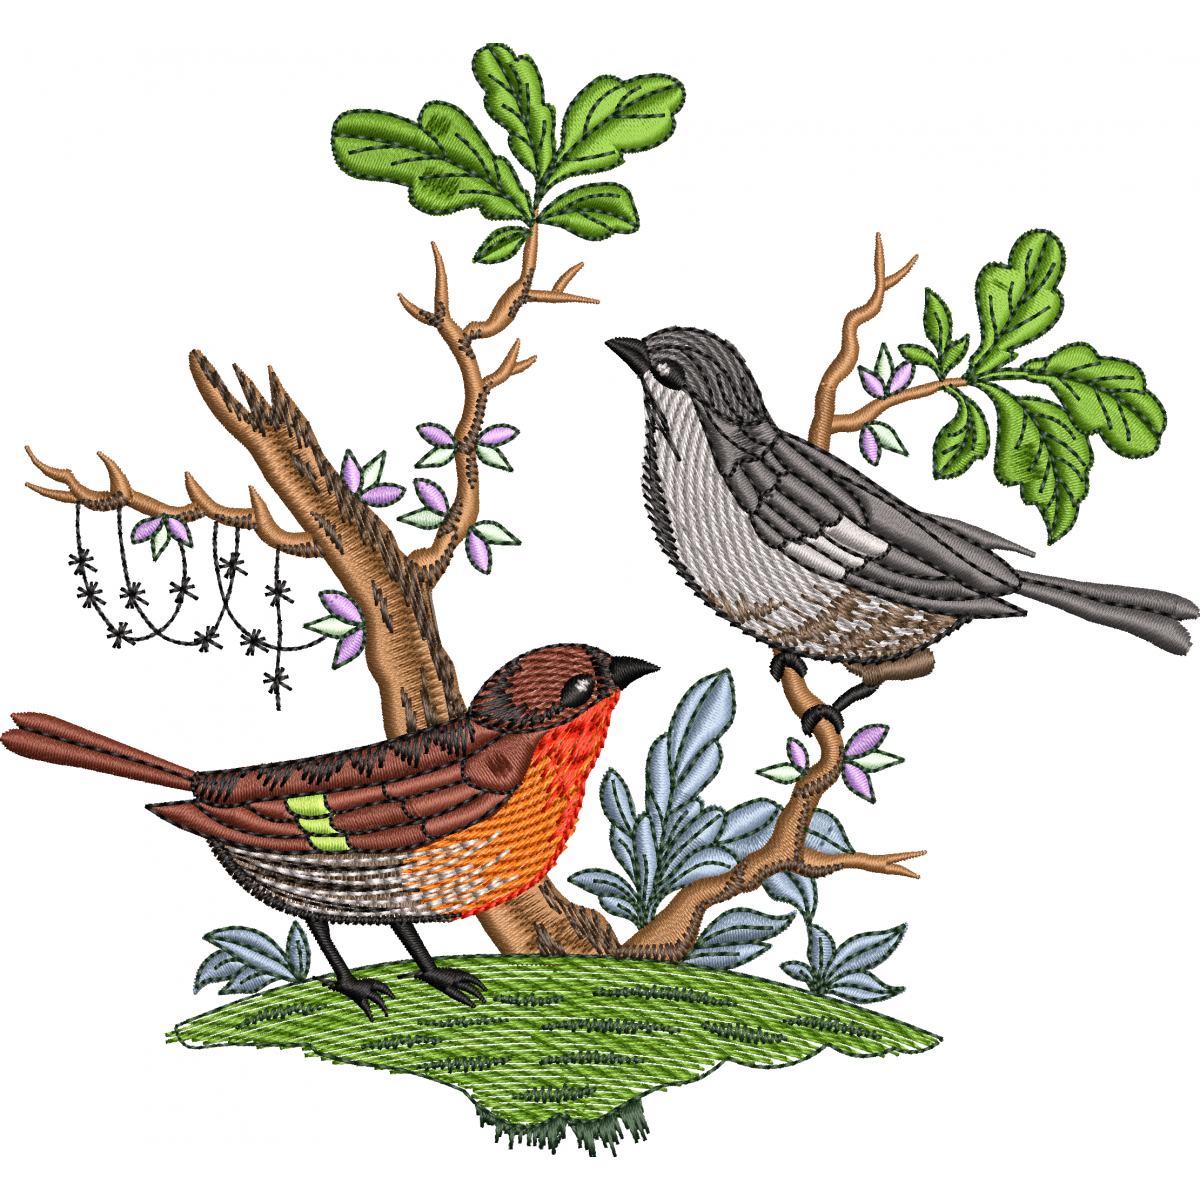 Sparrowbird embroidery design 7f